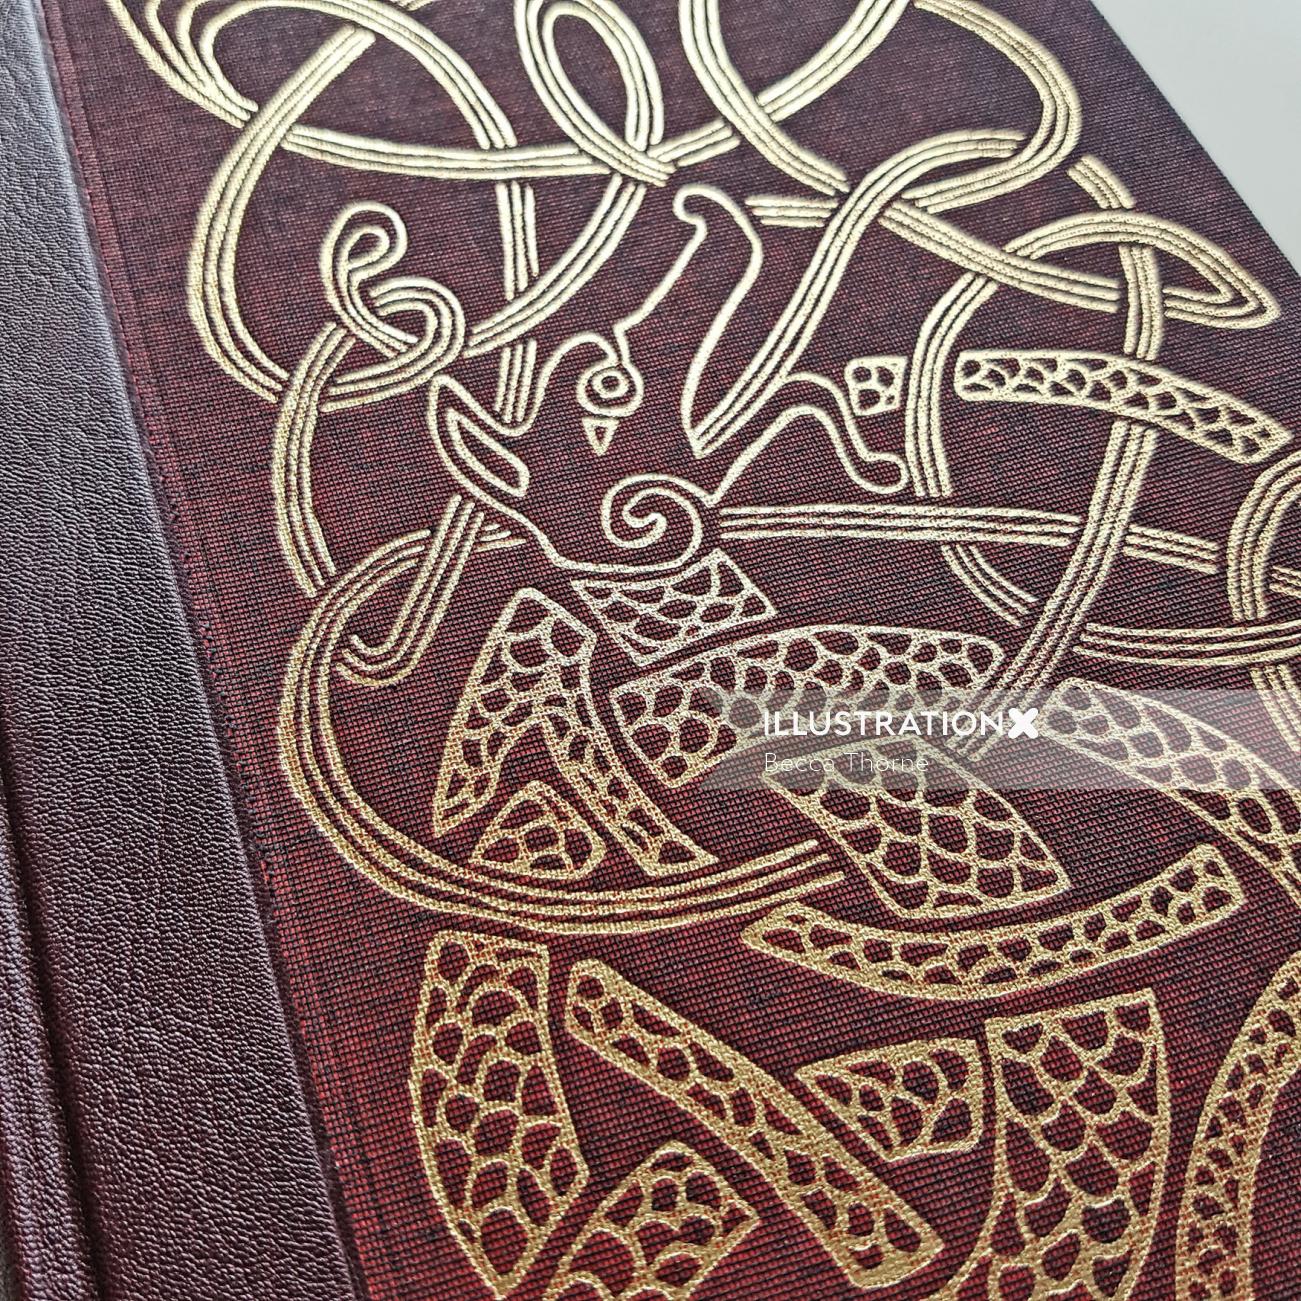 The Folio Society の Seamus Heaney の Beowulf の表紙で、金箔をはったリノカットのイラストが示されています